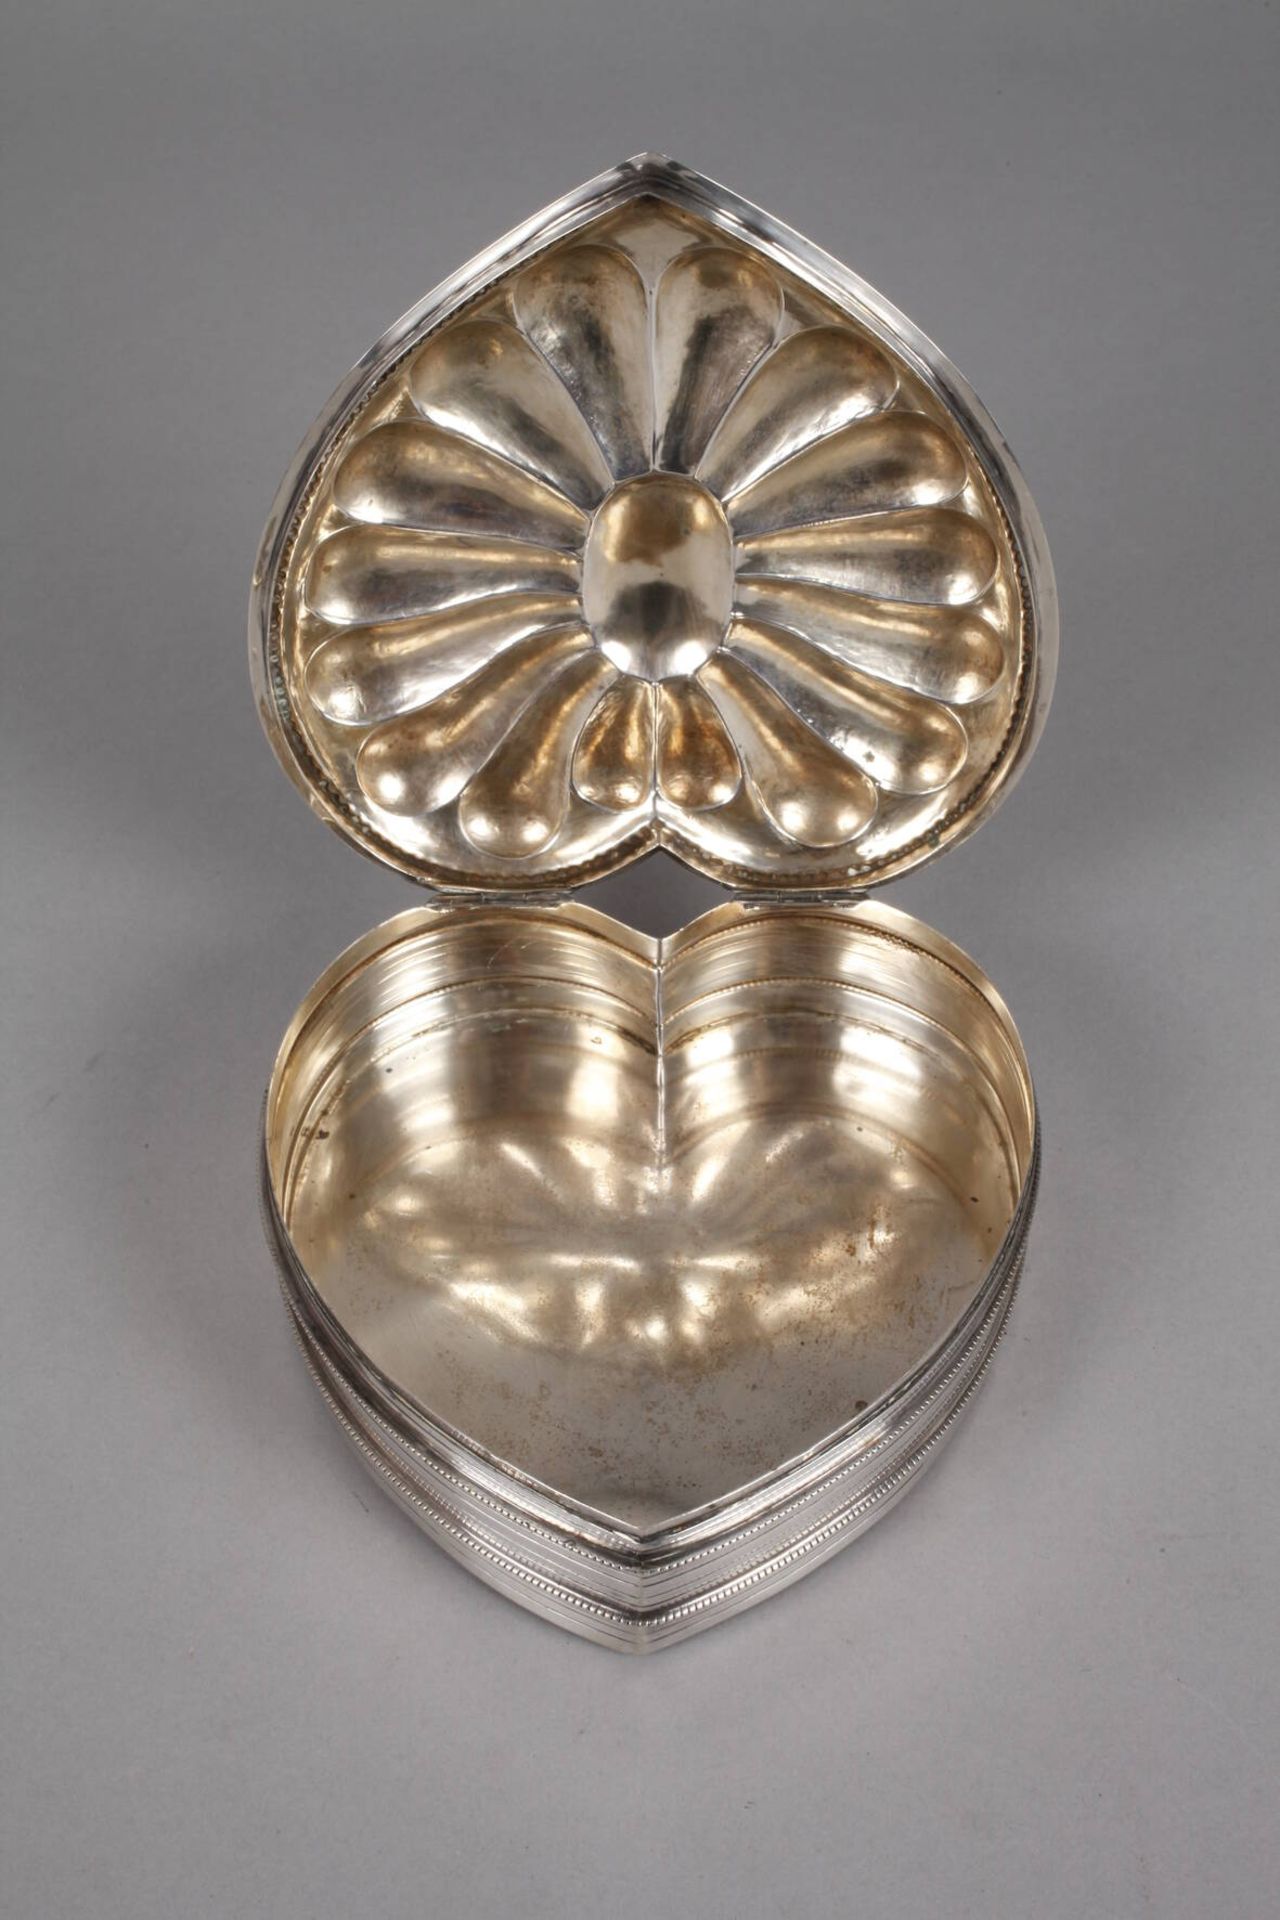 Silber Herzdoseum 1920, gestempelt Halbmond, Krone, 800, Herstellermarke Wilhelm Weinranck/Hanau, - Image 2 of 4